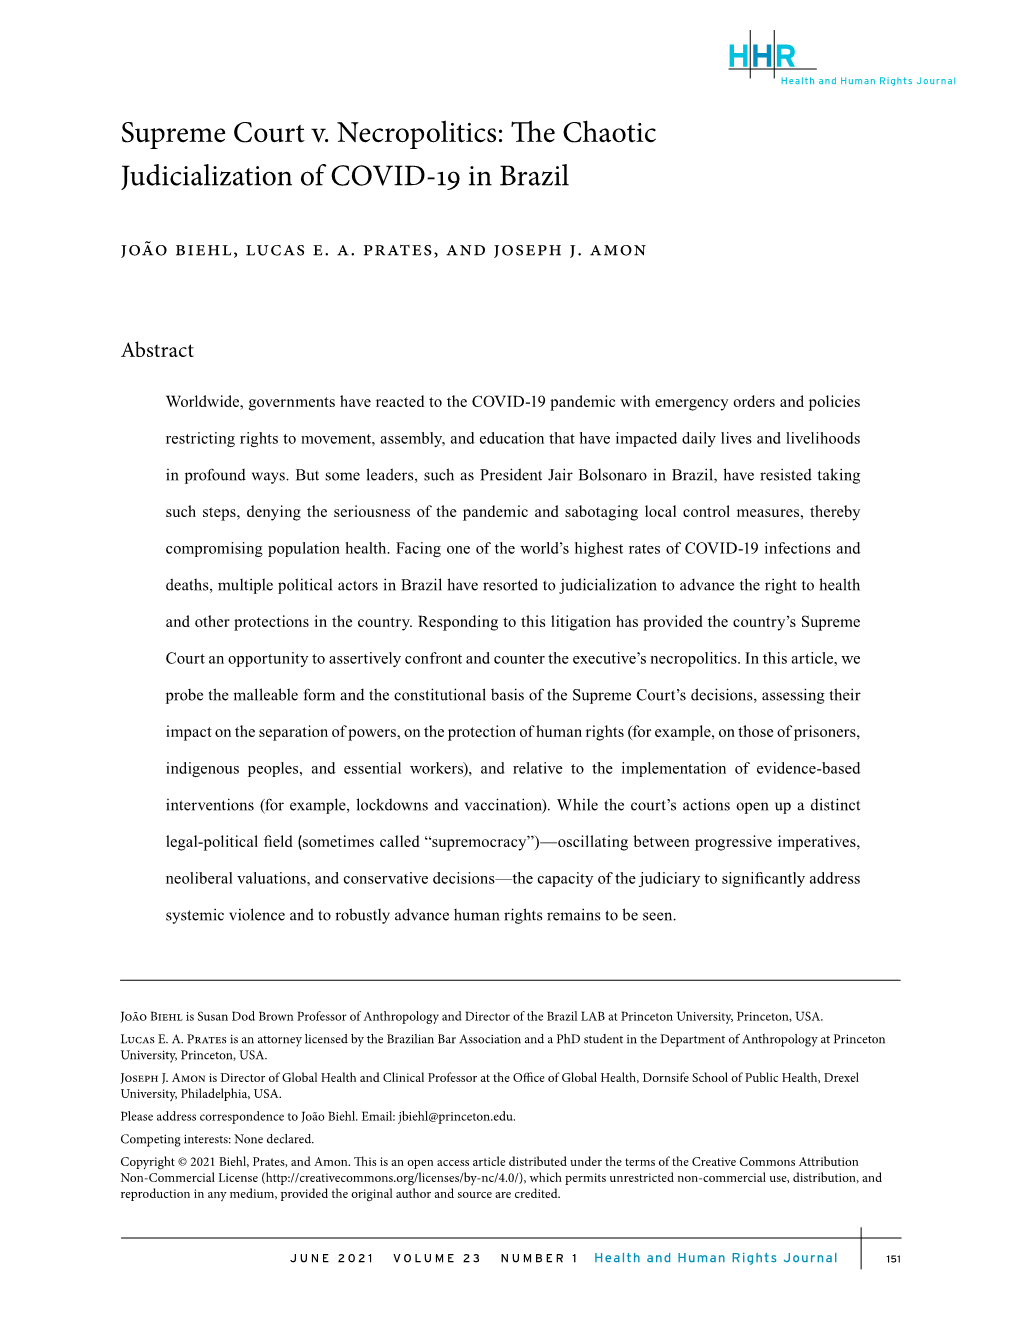 Supreme Court V. Necropolitics: the Chaotic Judicialization of COVID-19 in Brazil